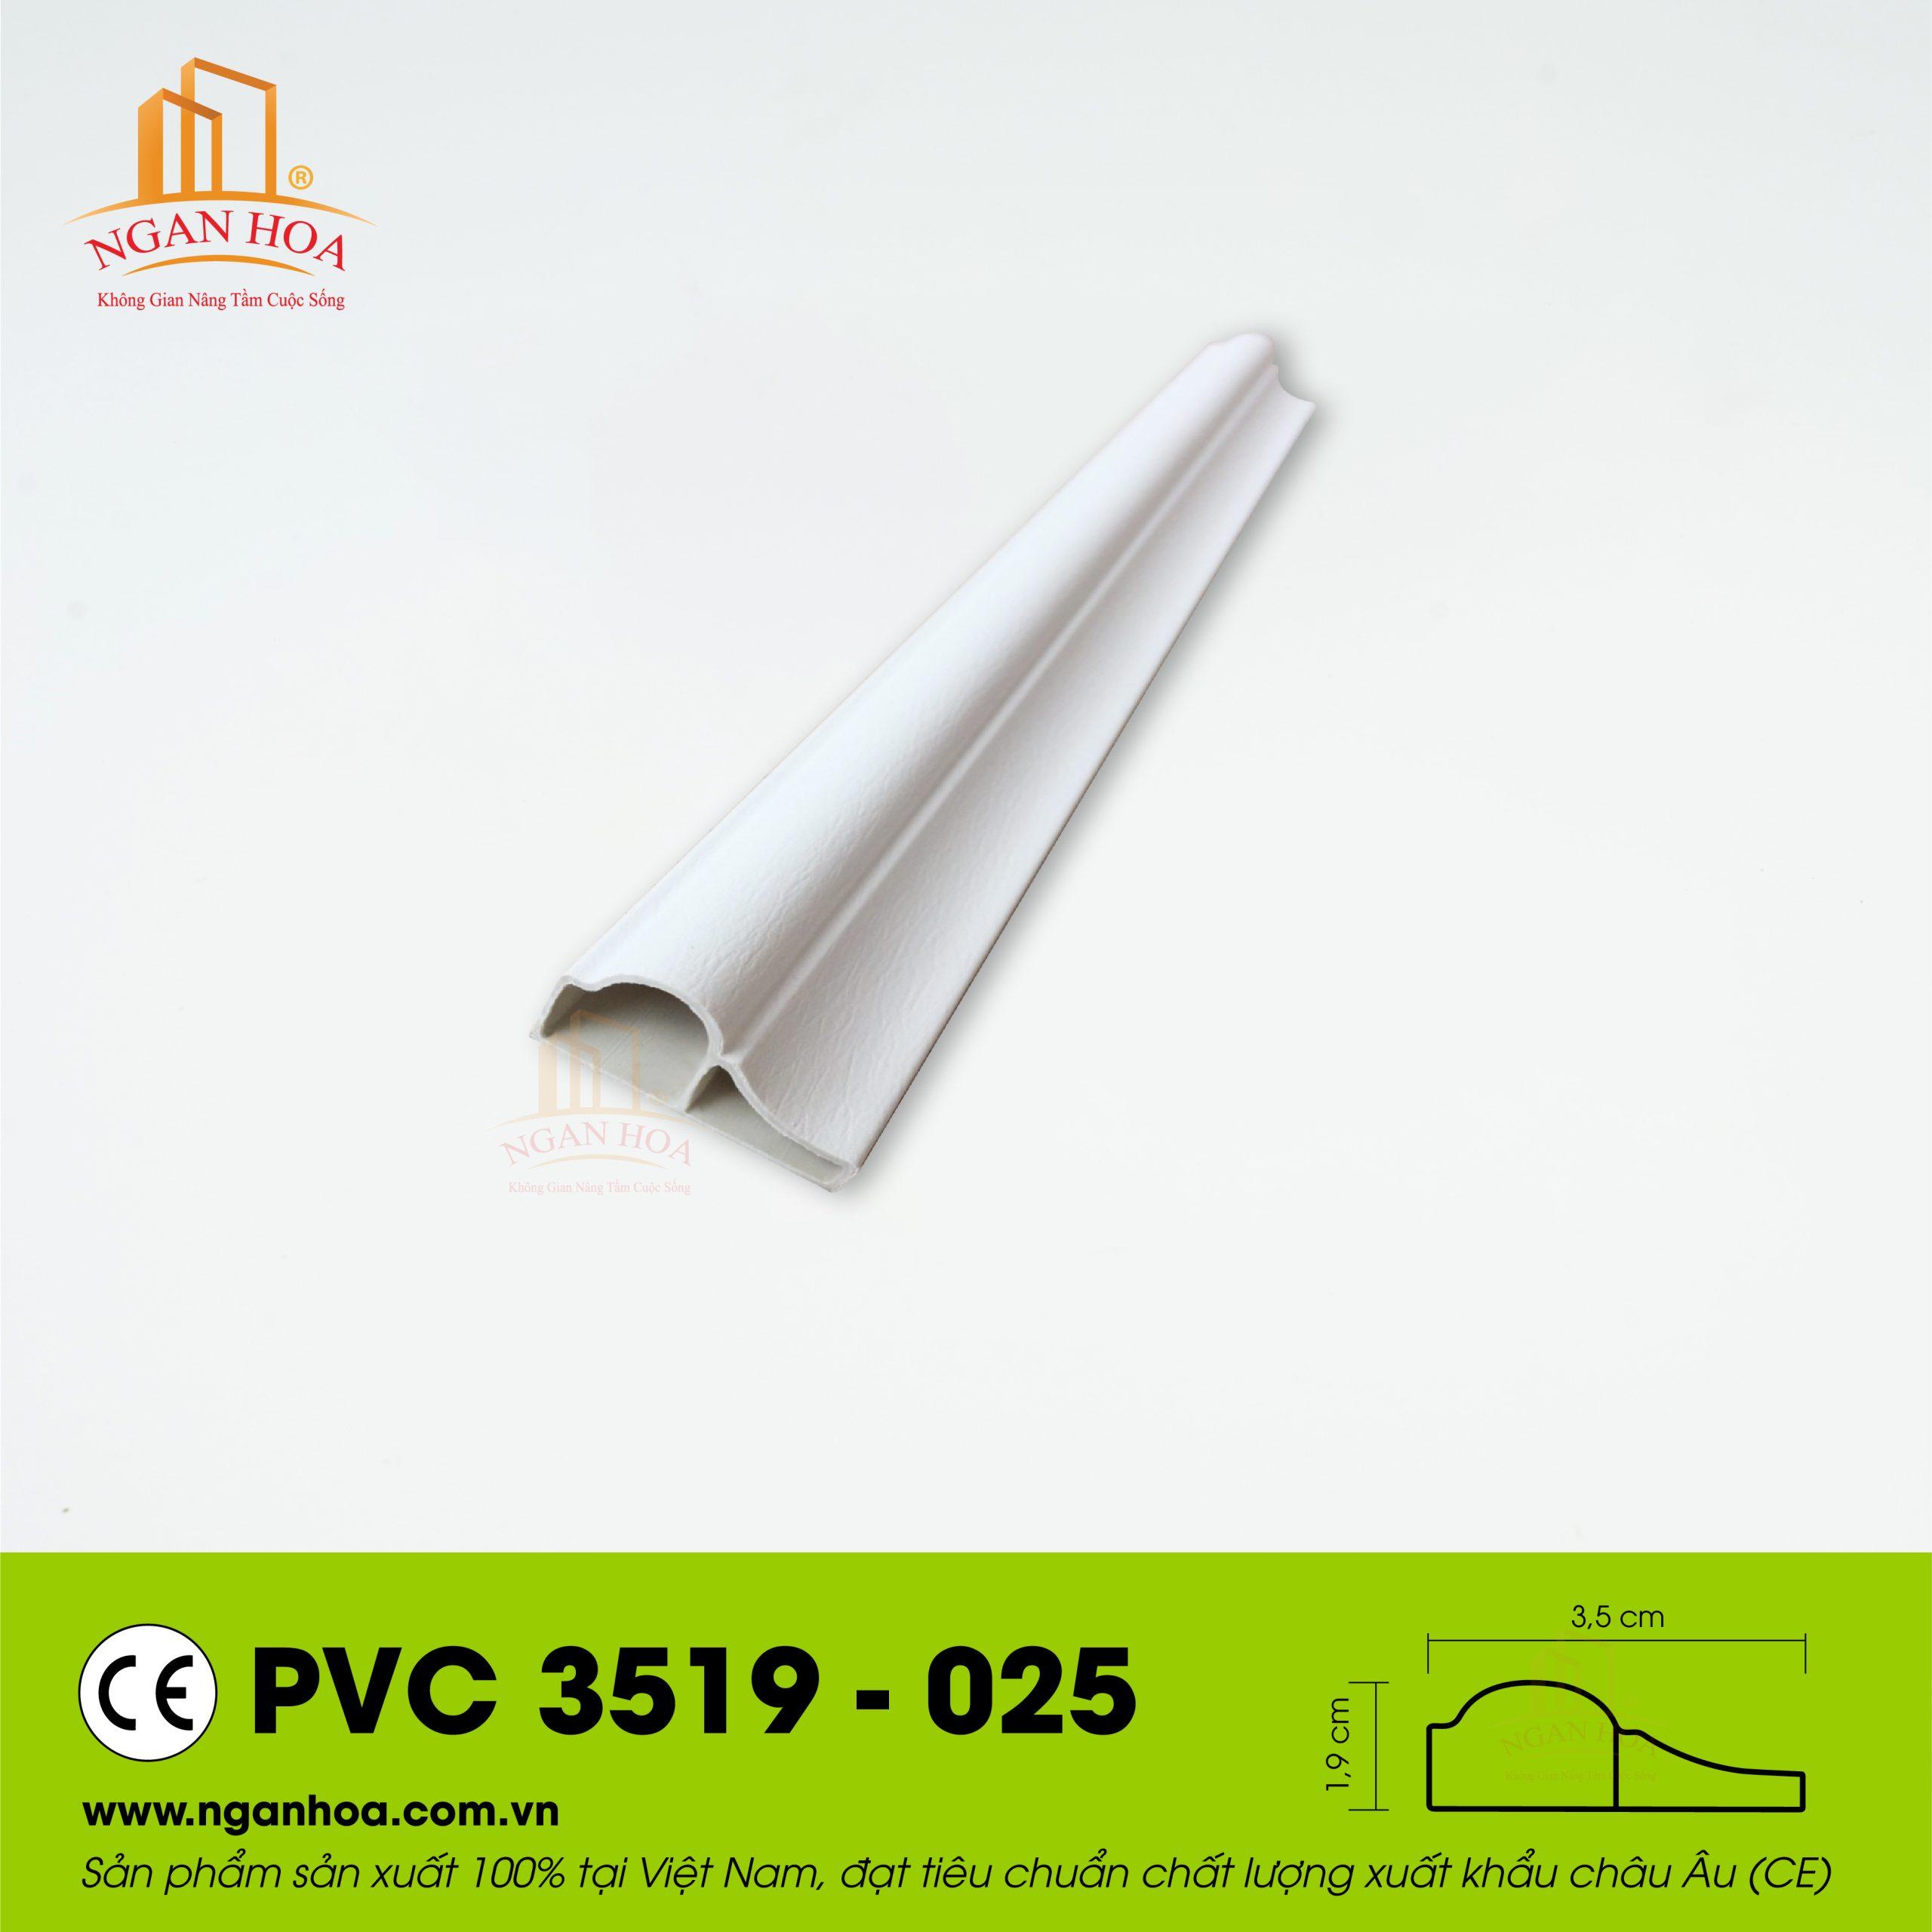 PVC 3519 025 scaled